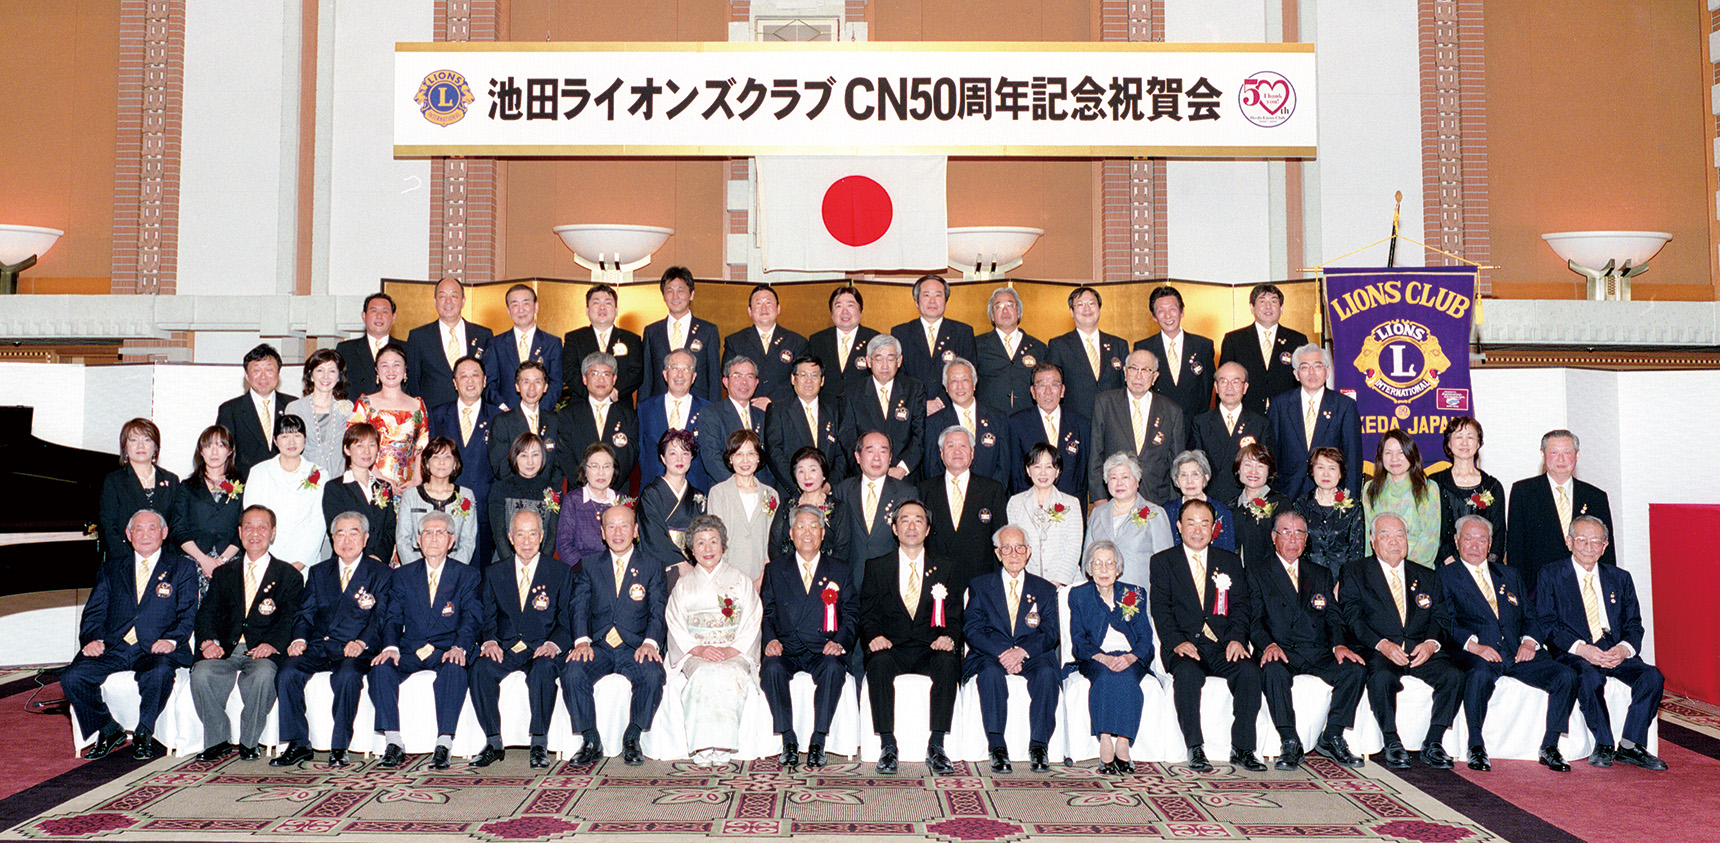 CN50周年記念祝賀会の集合写真